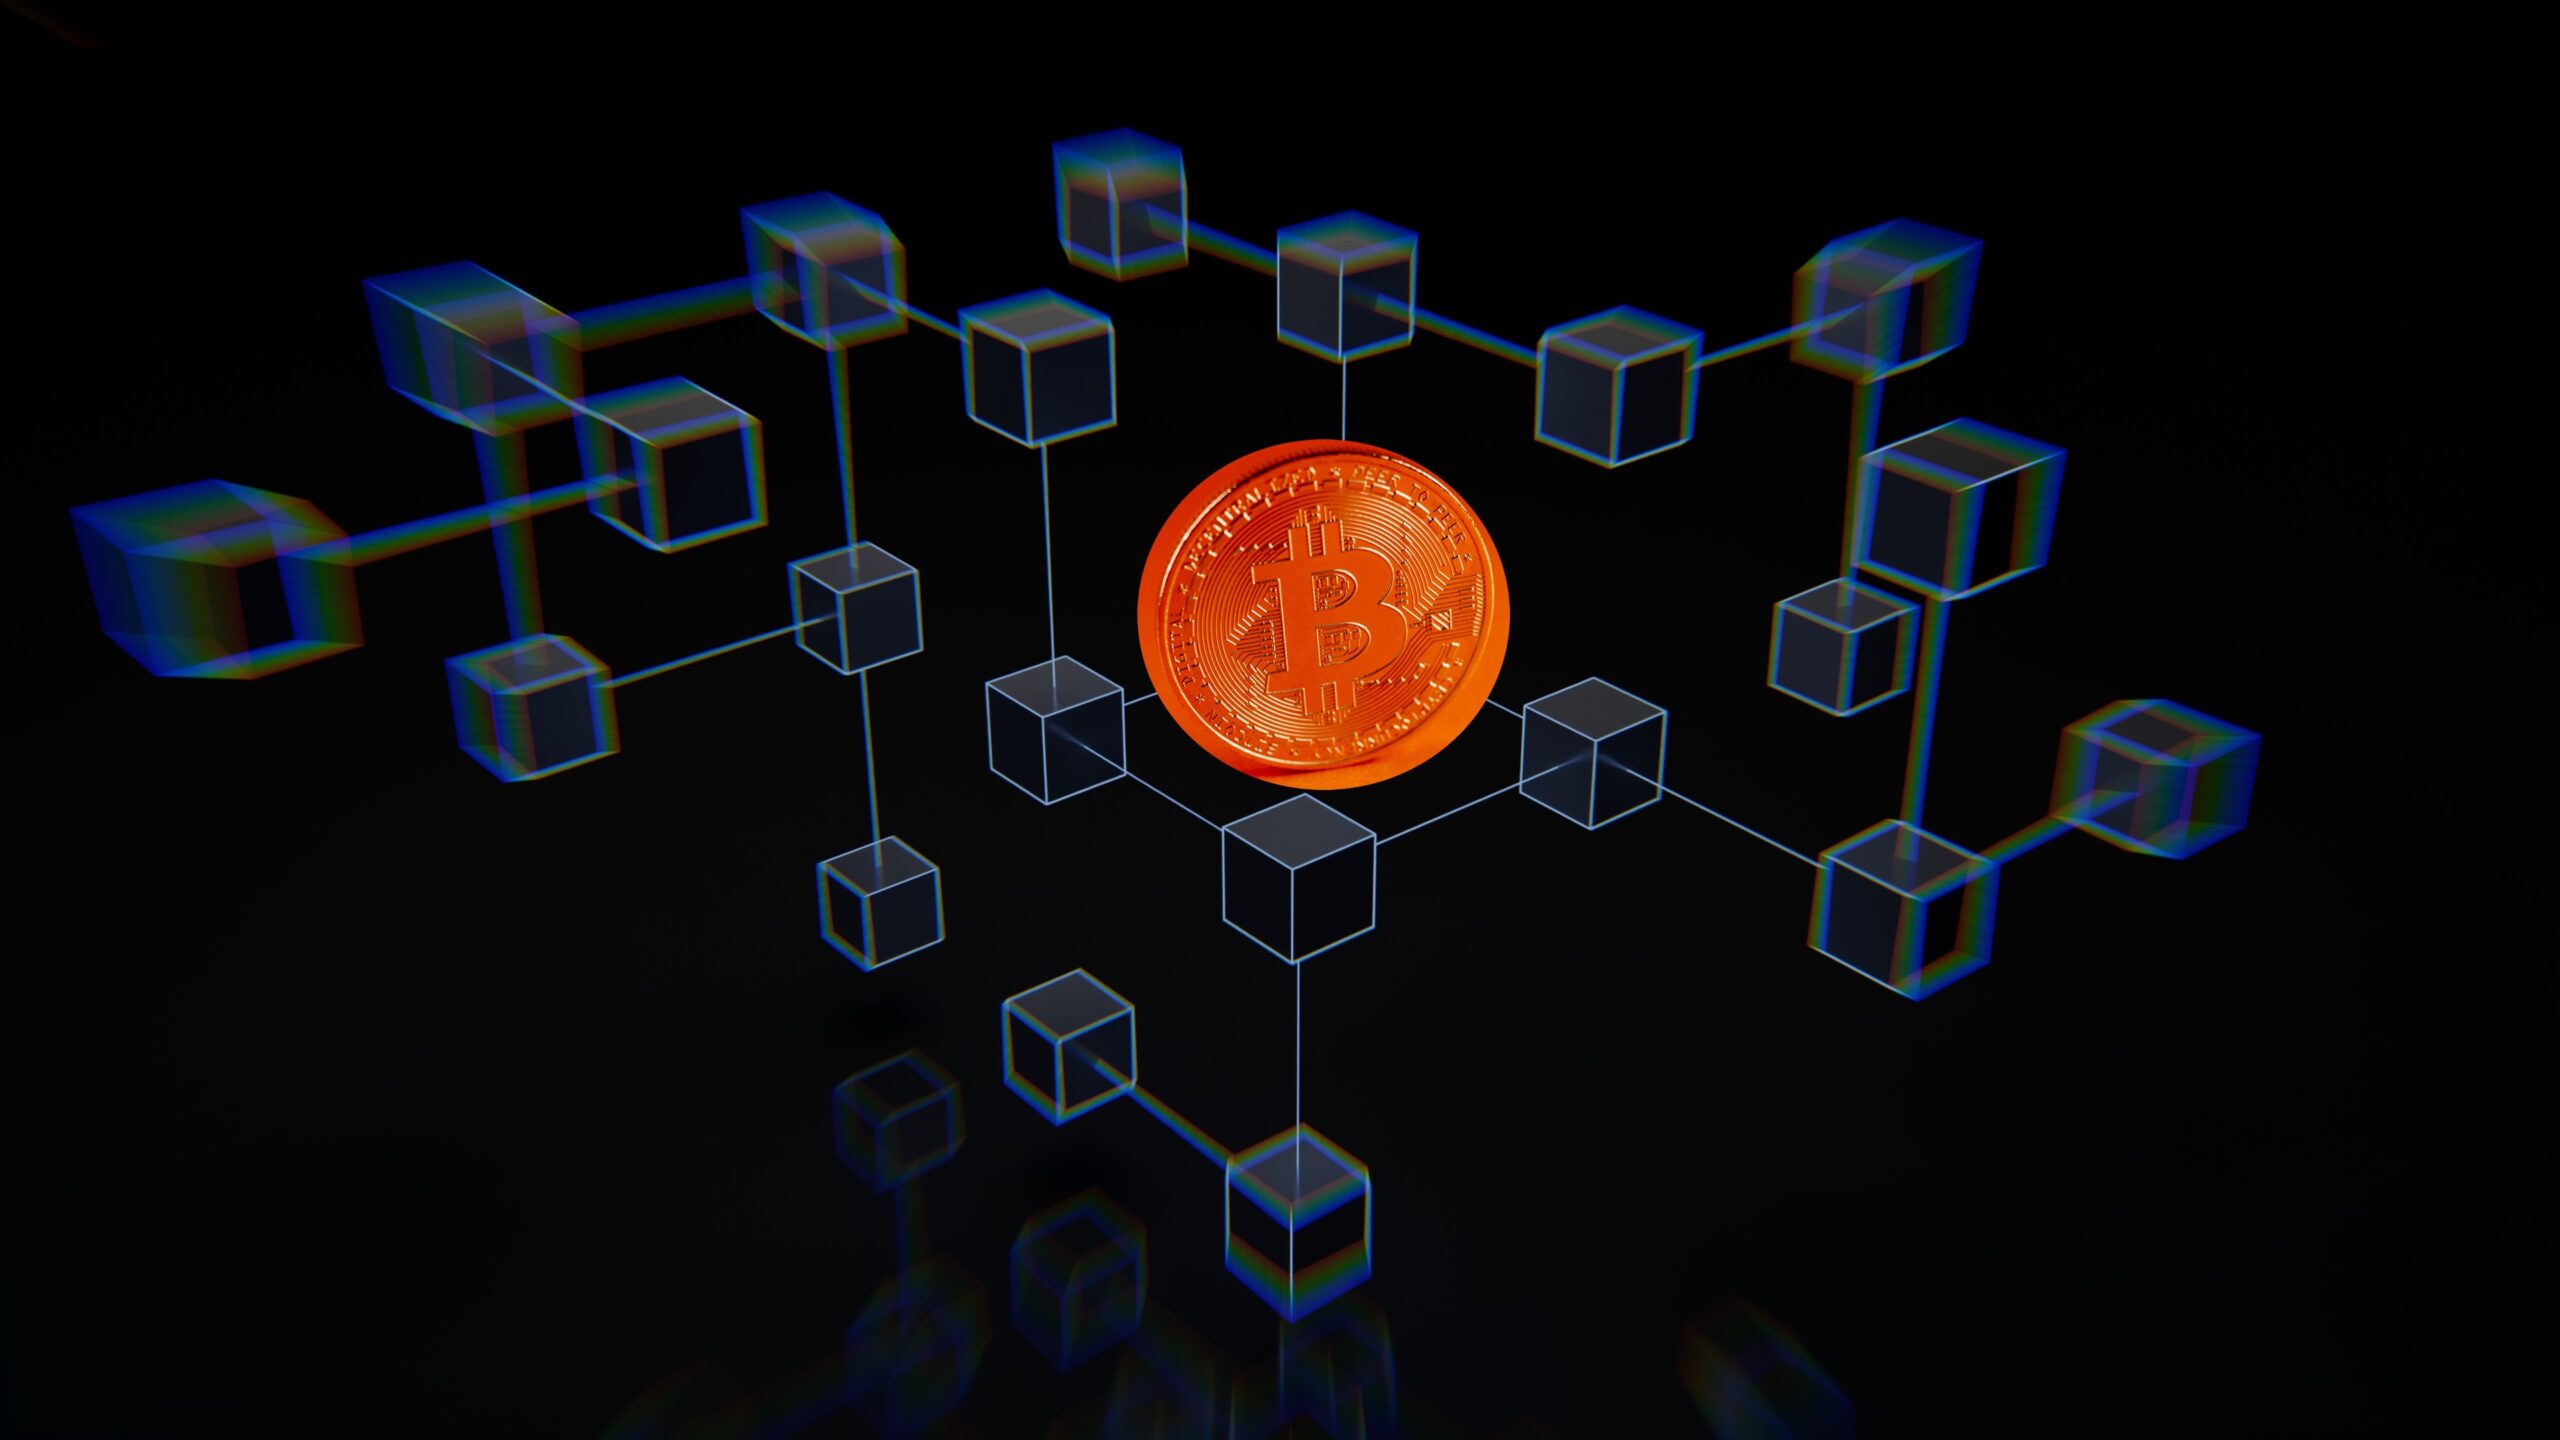 Immagine che rappresenta la blockchain di Bitcoin